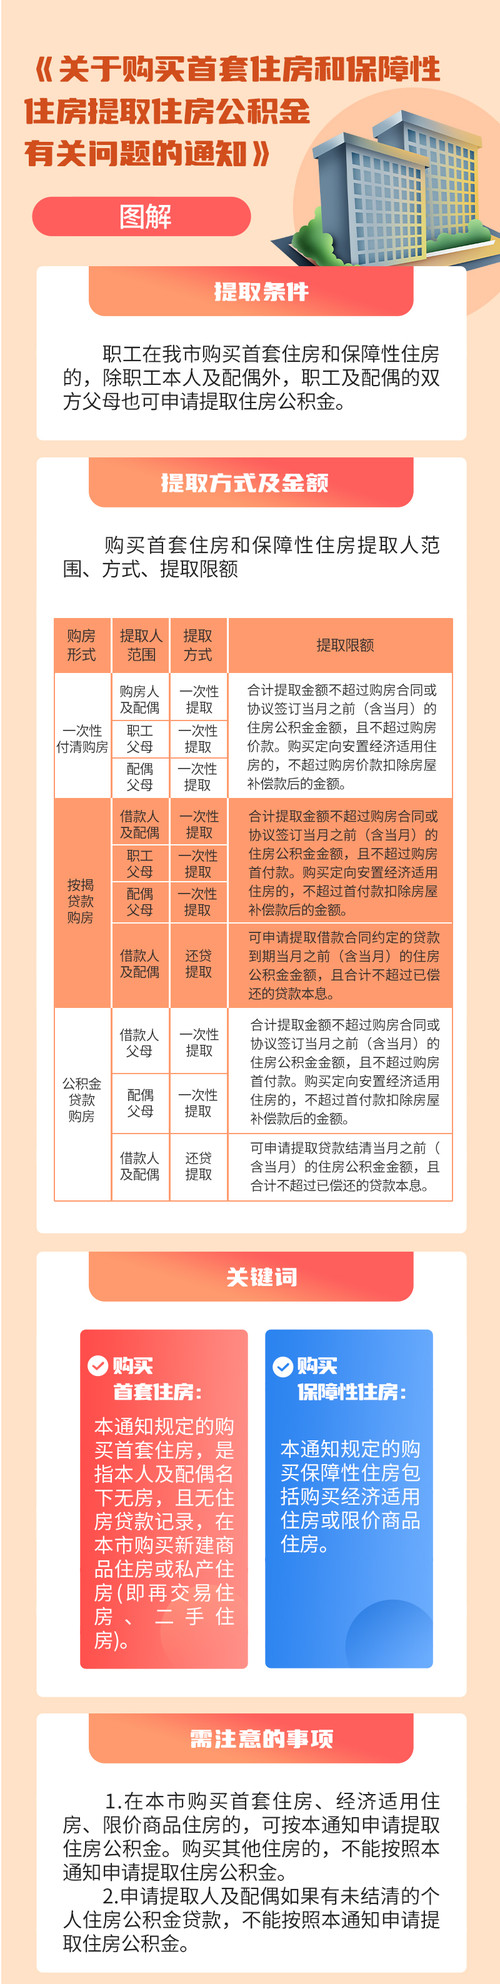 天津重新印发公积金新政：父母可提取住房公积金支持子女购房